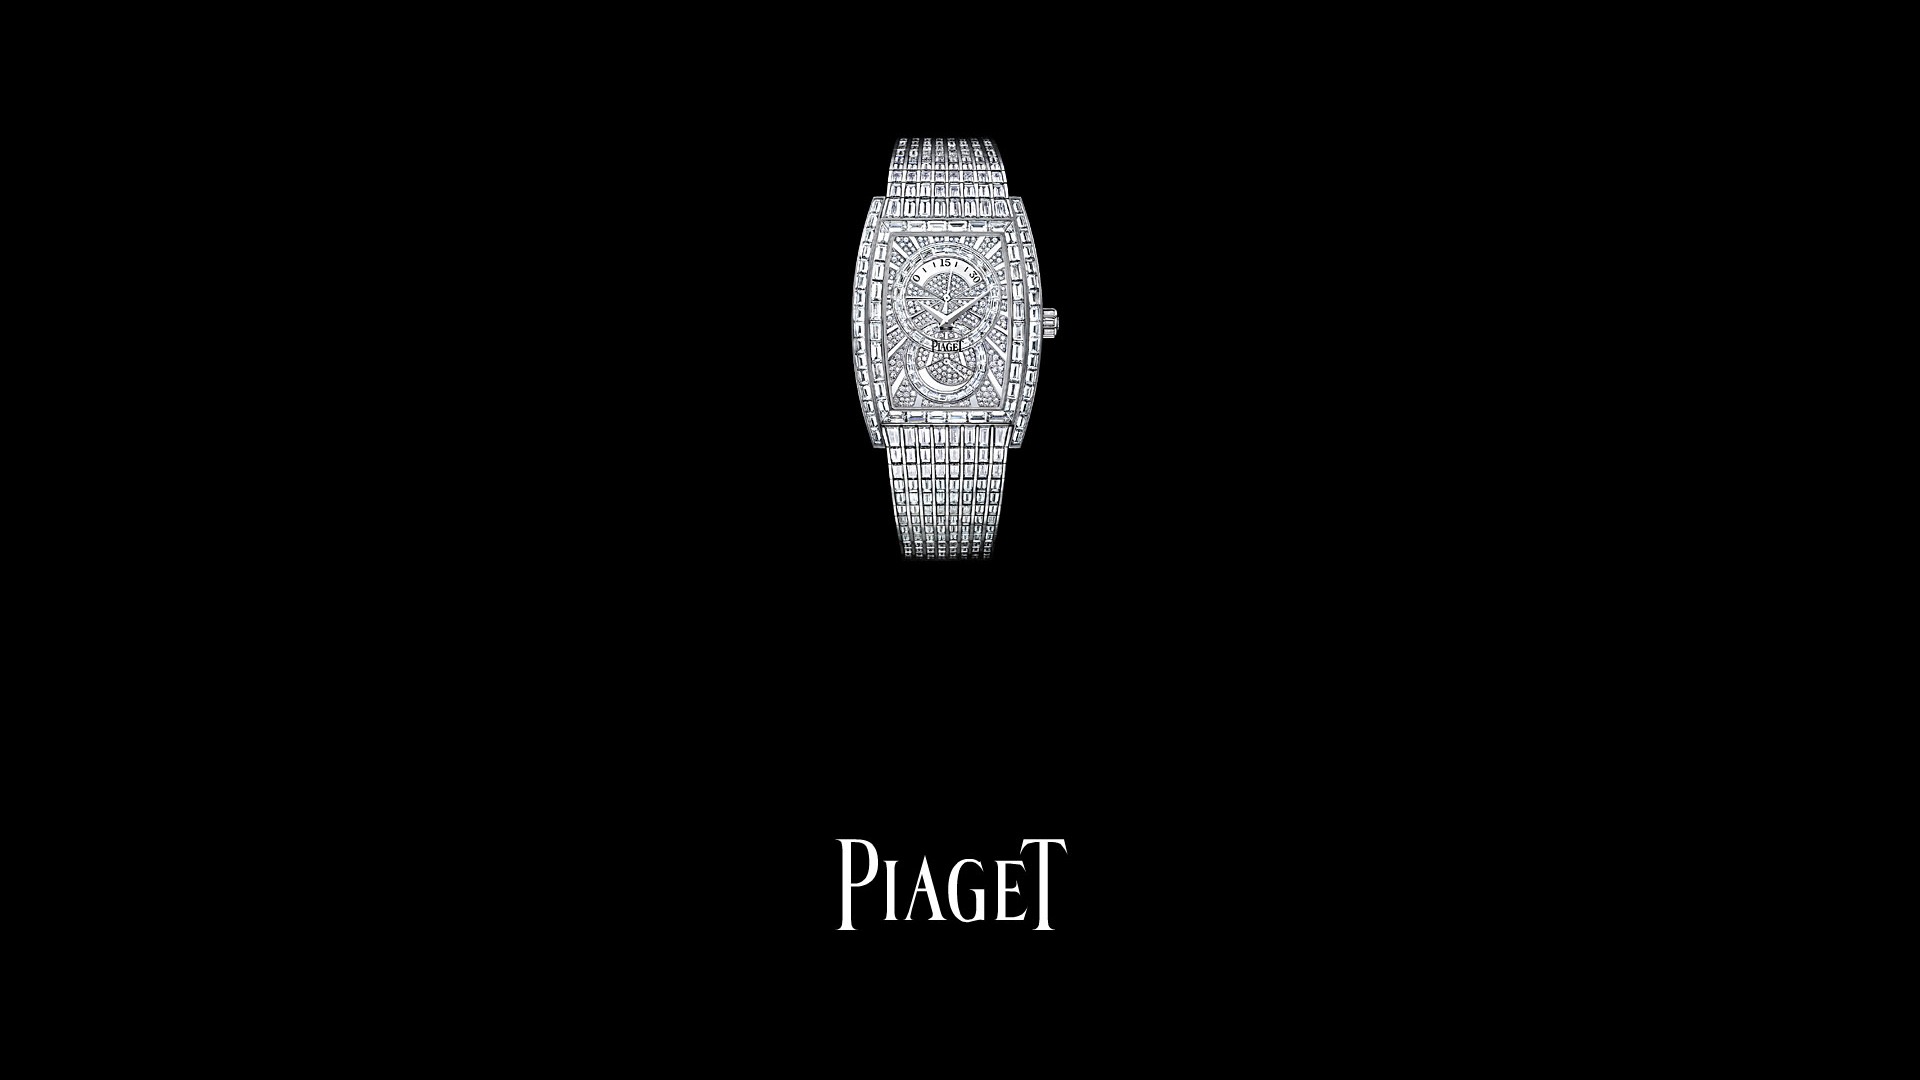 Piaget Diamante fondos de escritorio de reloj (2) #9 - 1920x1080